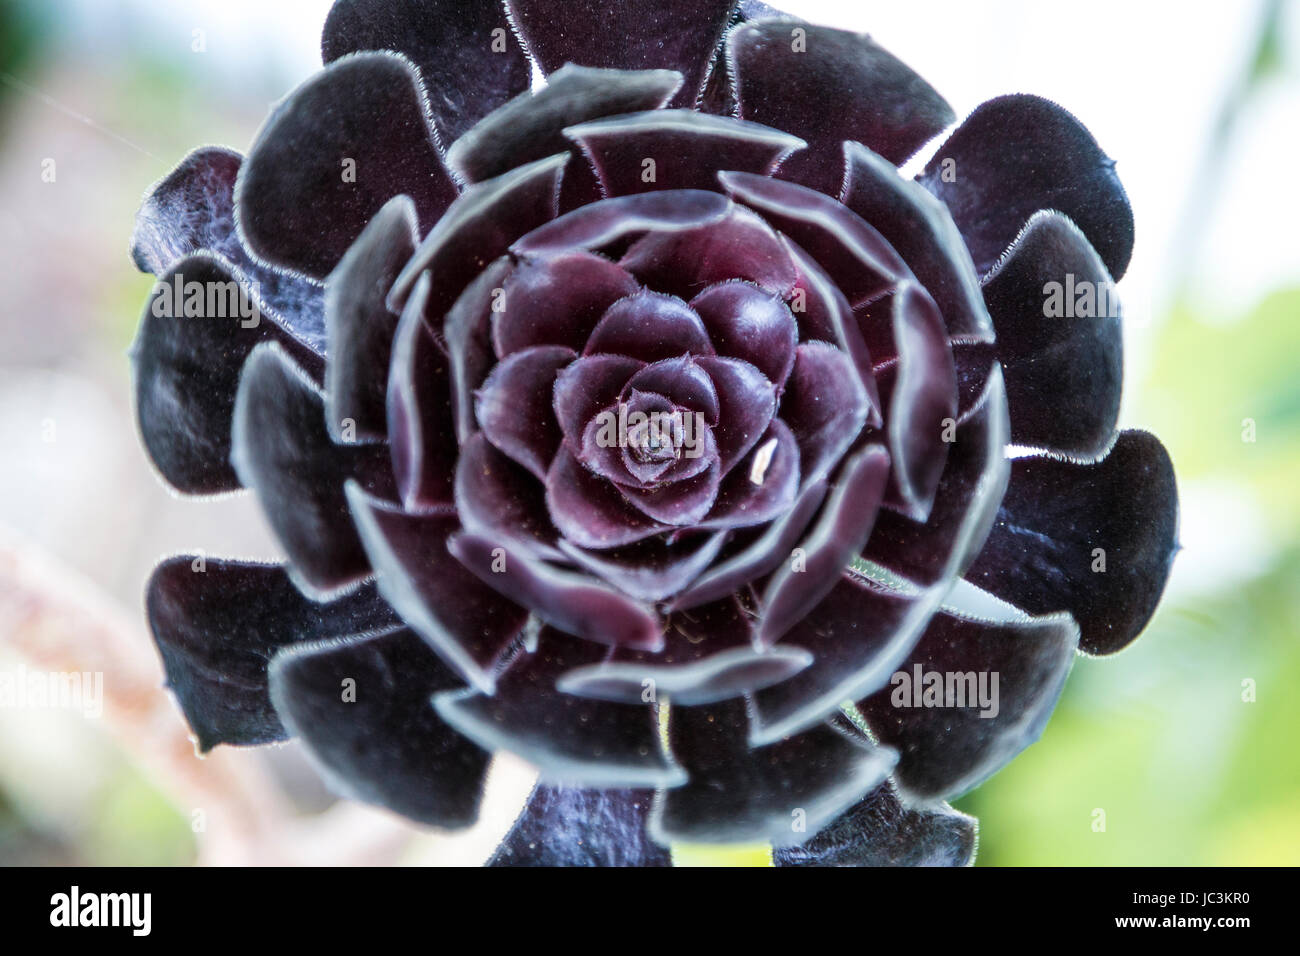 Albero nero (aeonium Aeonium arboreum Zwartkop) fiore close-up Foto Stock